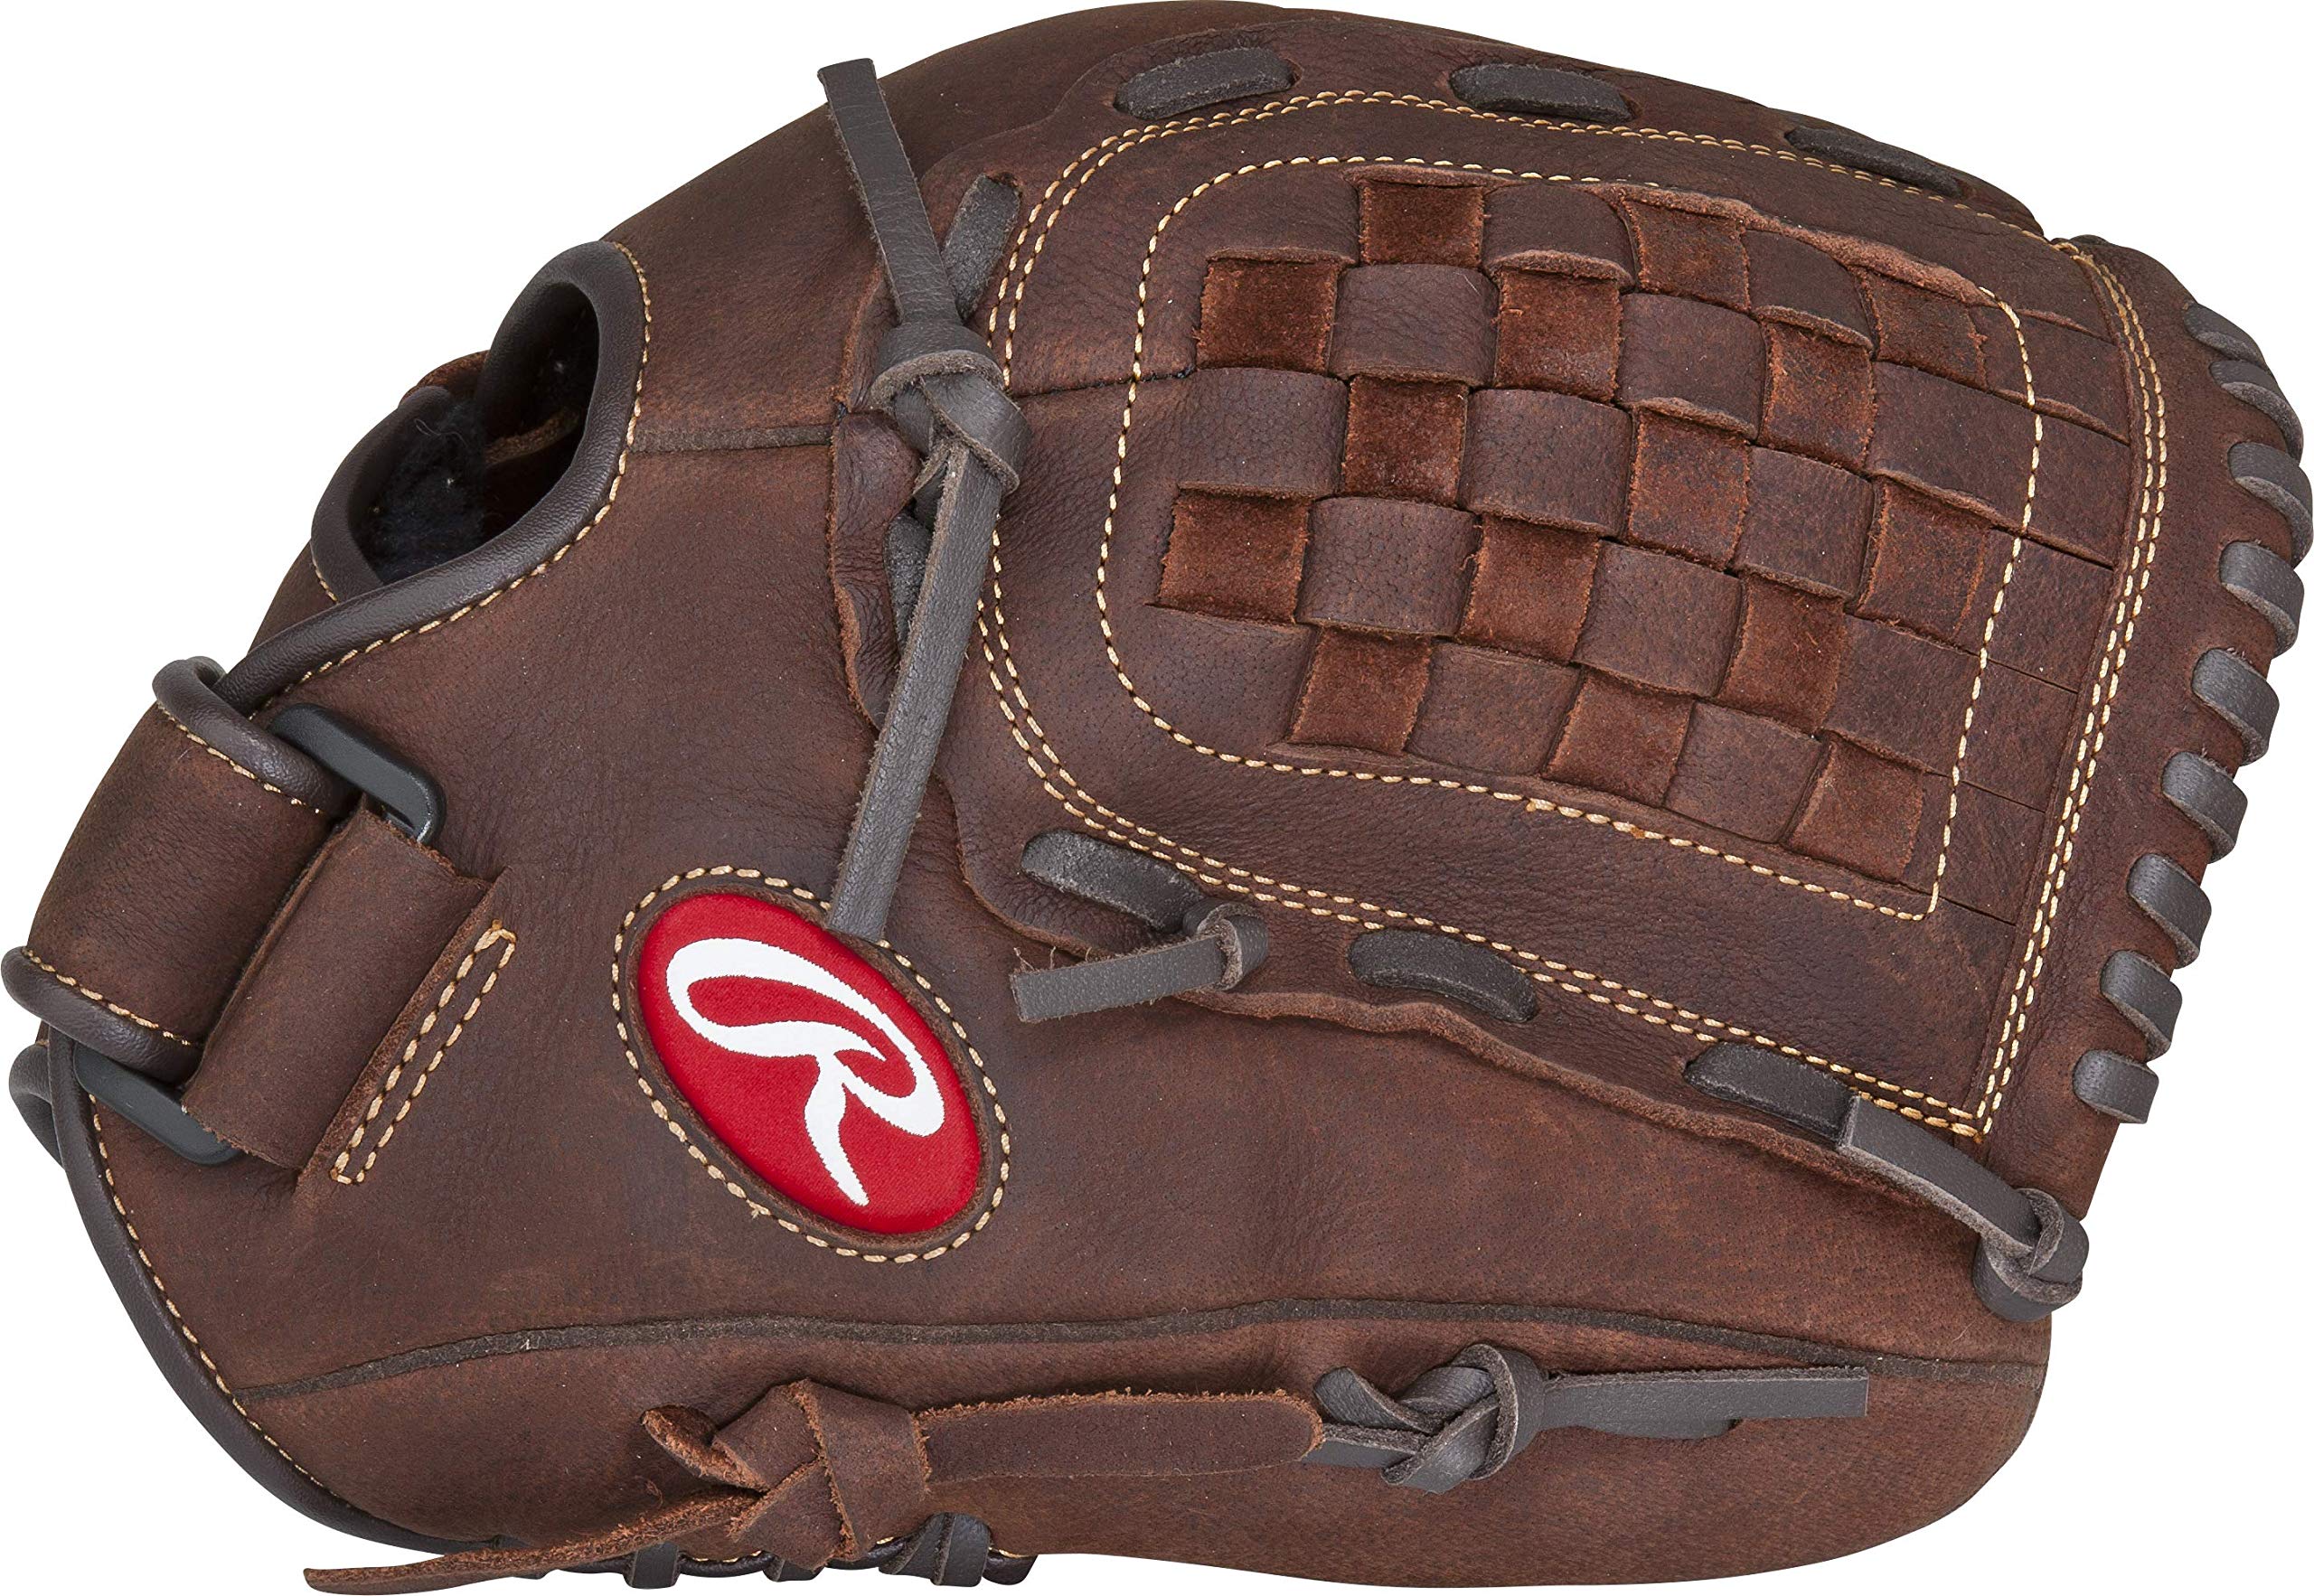 Rawlings | Serie de guantes preferidos por el jugador | Béisbol/Softbol de Lanzamiento Lento | Múltiples Estilos